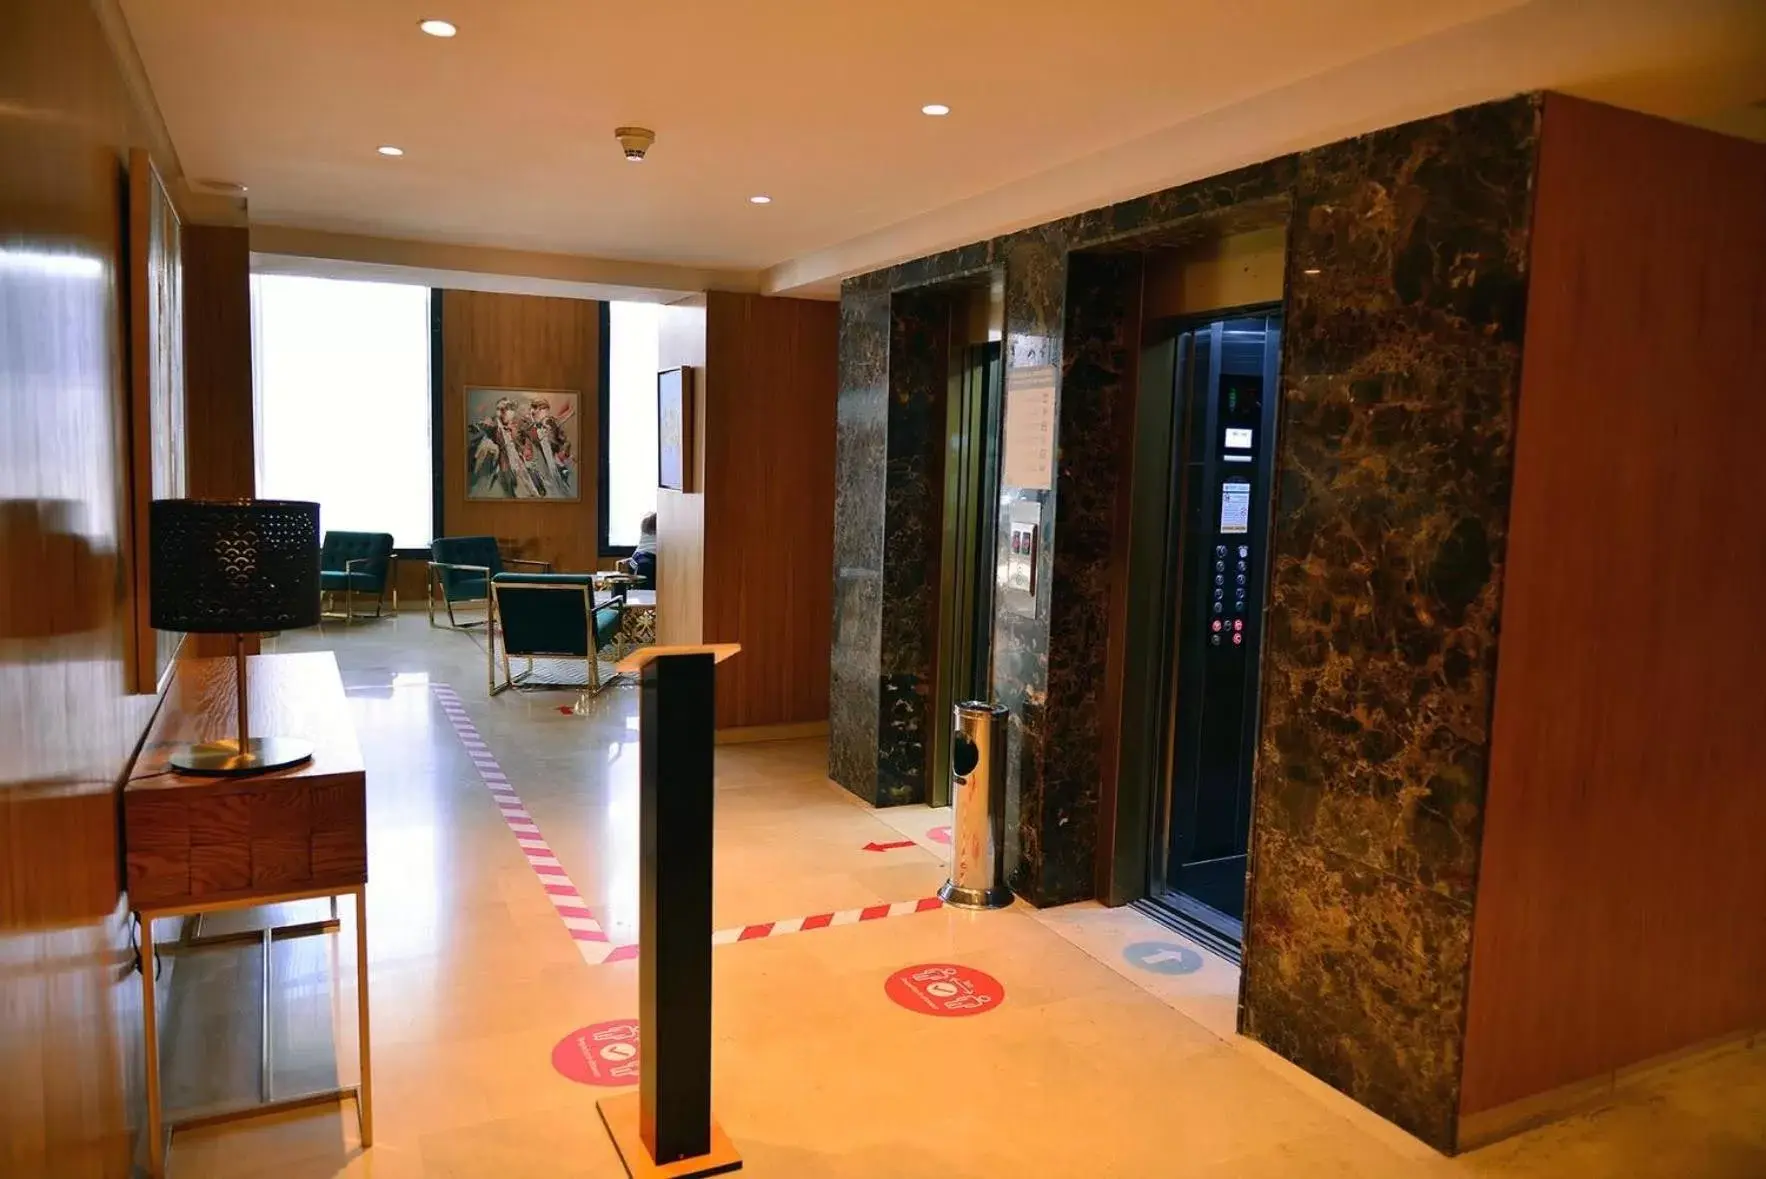 Lobby or reception in Rihab Hotel